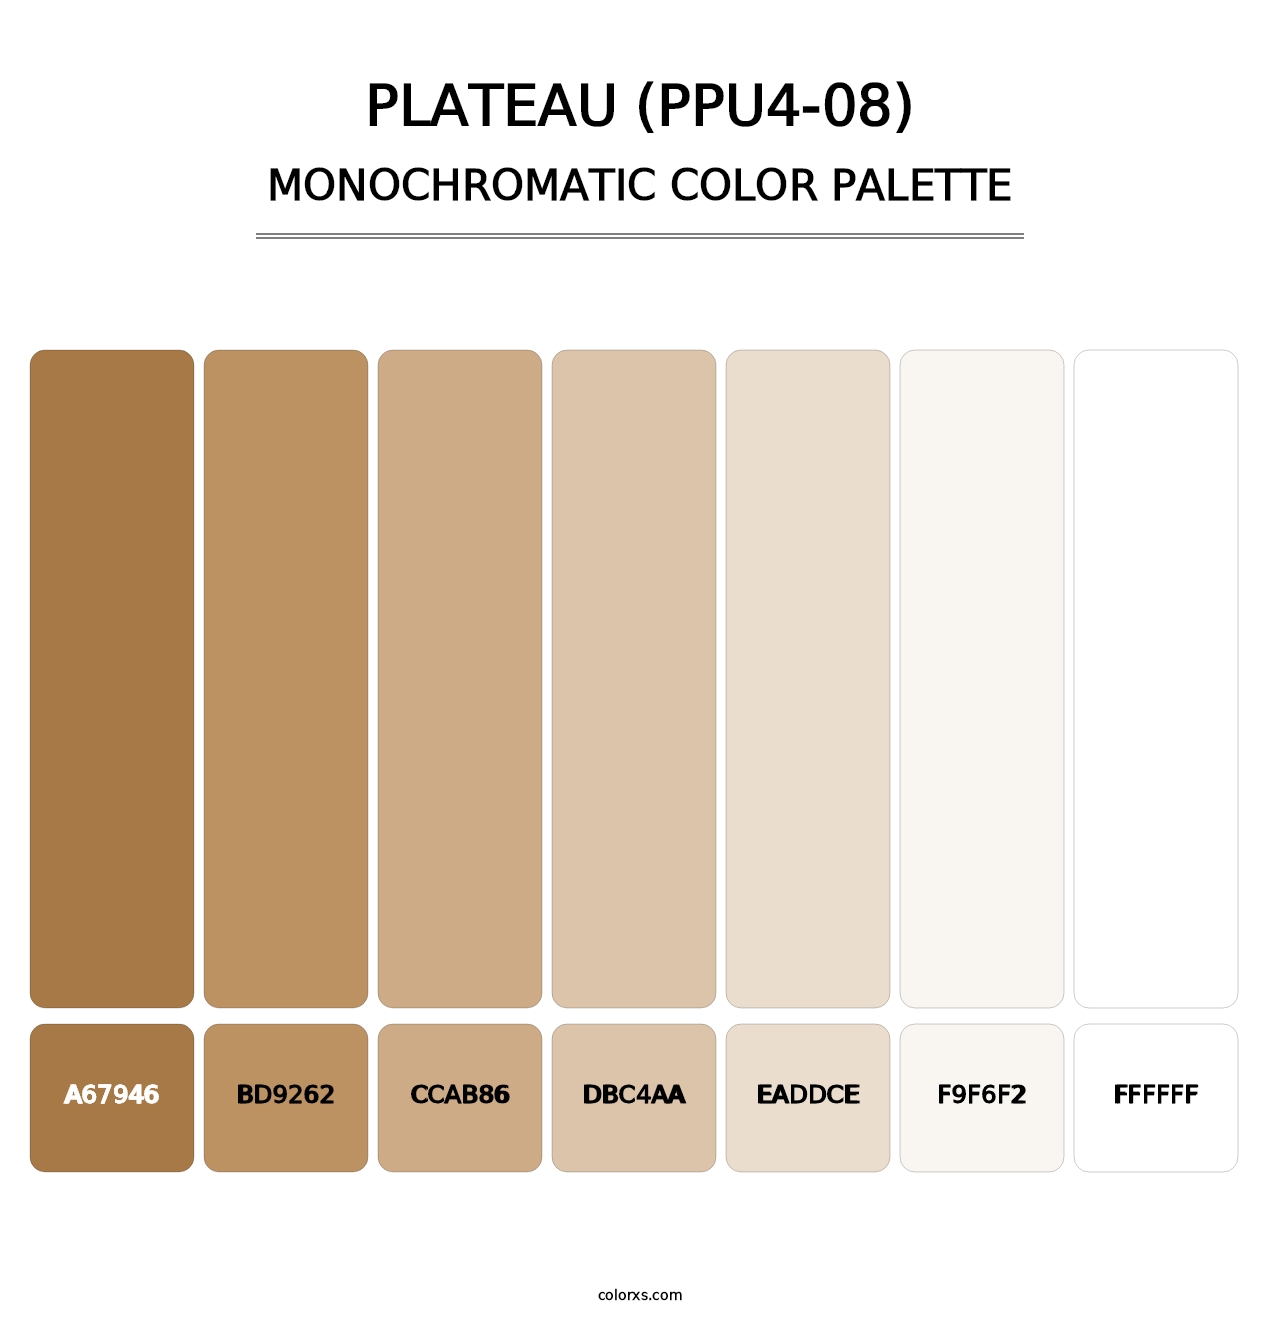 Plateau (PPU4-08) - Monochromatic Color Palette